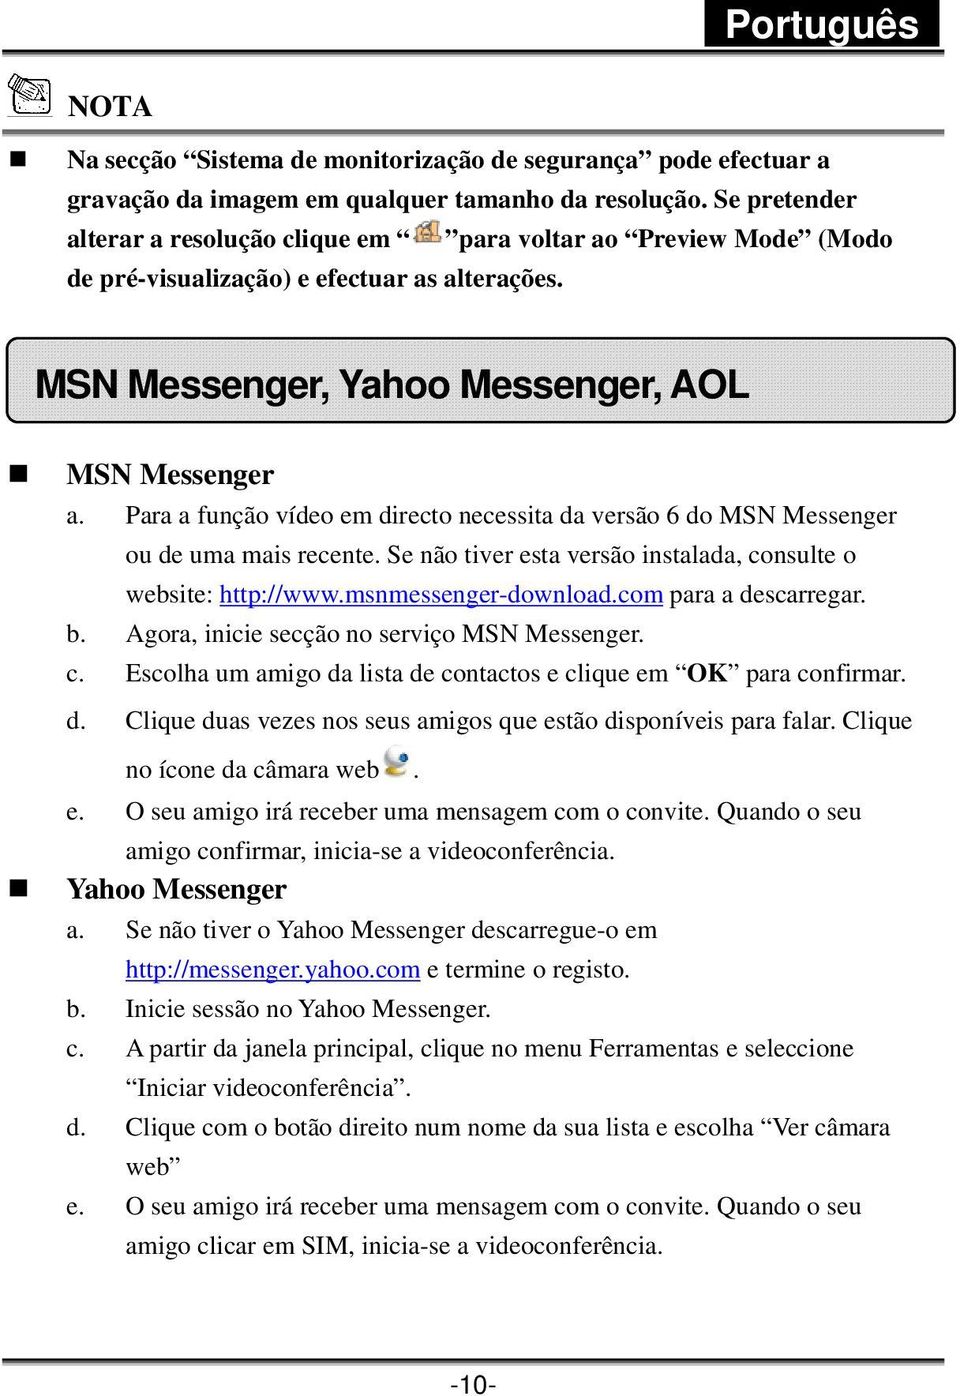 Para a função vídeo em directo necessita da versão 6 do MSN Messenger ou de uma mais recente. Se não tiver esta versão instalada, consulte o website: http://www.msnmessenger-download.